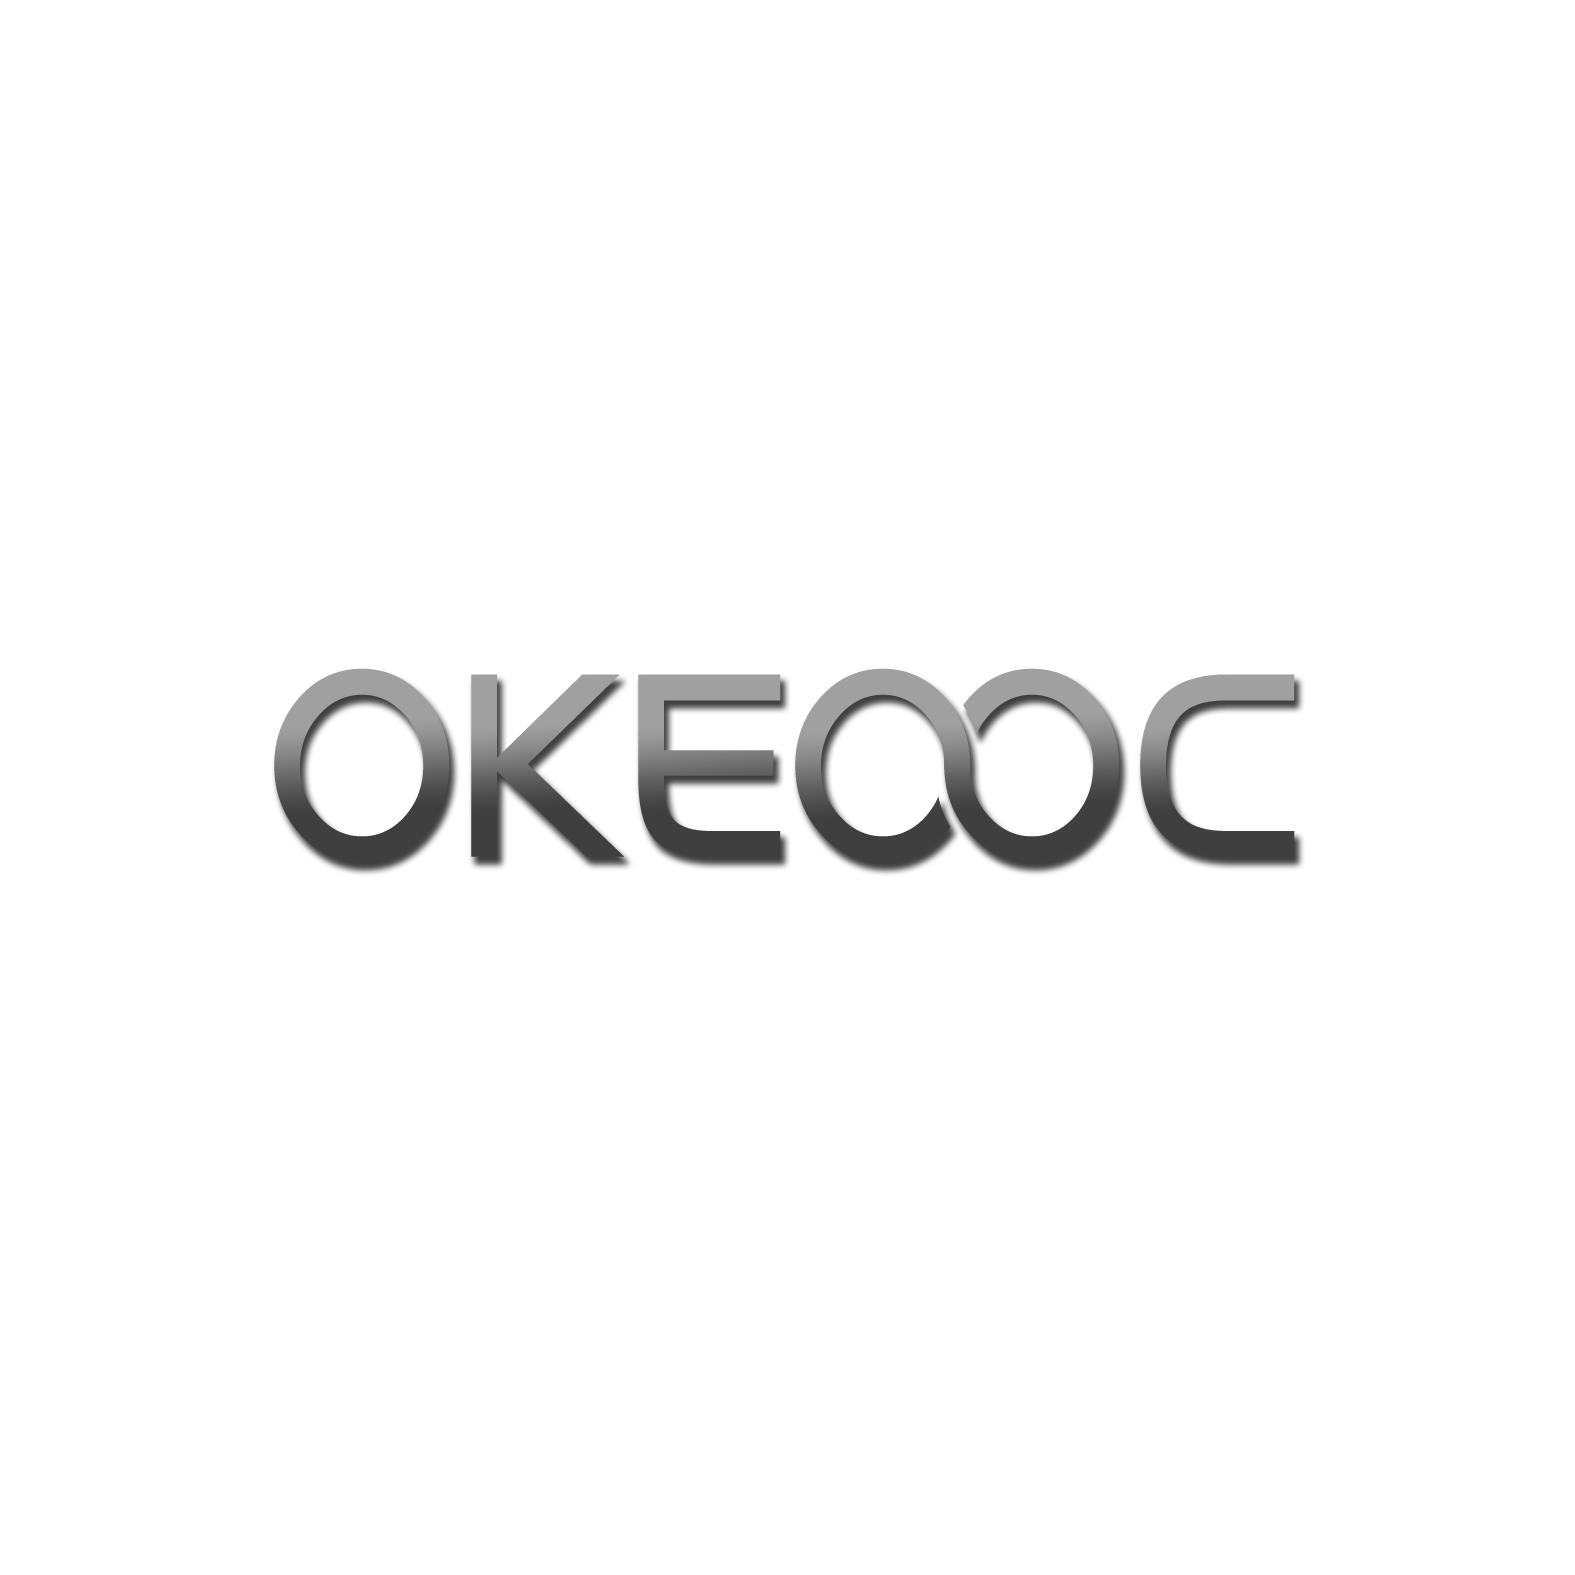 OKEOOC商标转让